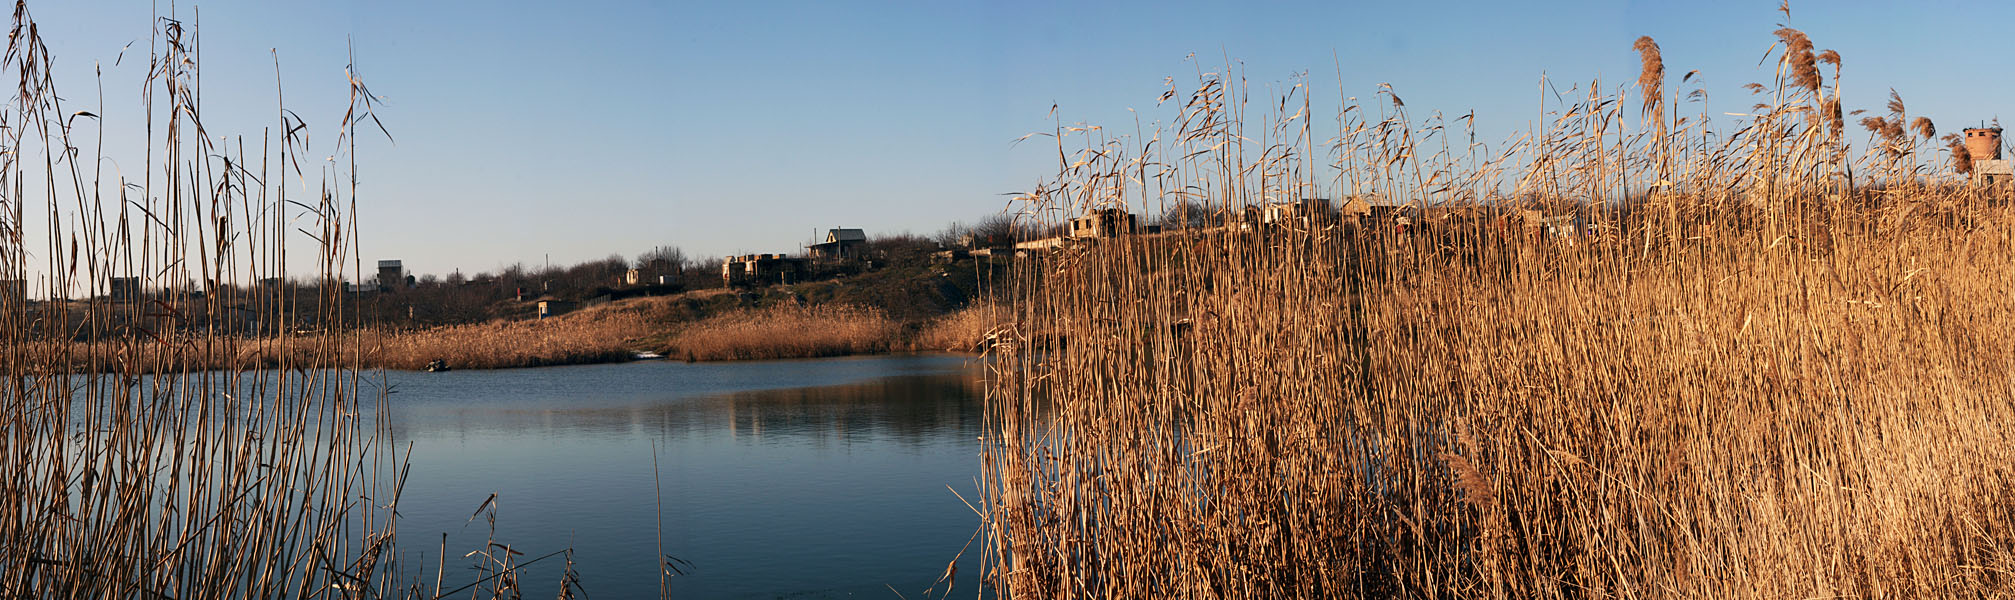 на озере Слава рядом с п. Грэсовский - Украина фото #2987